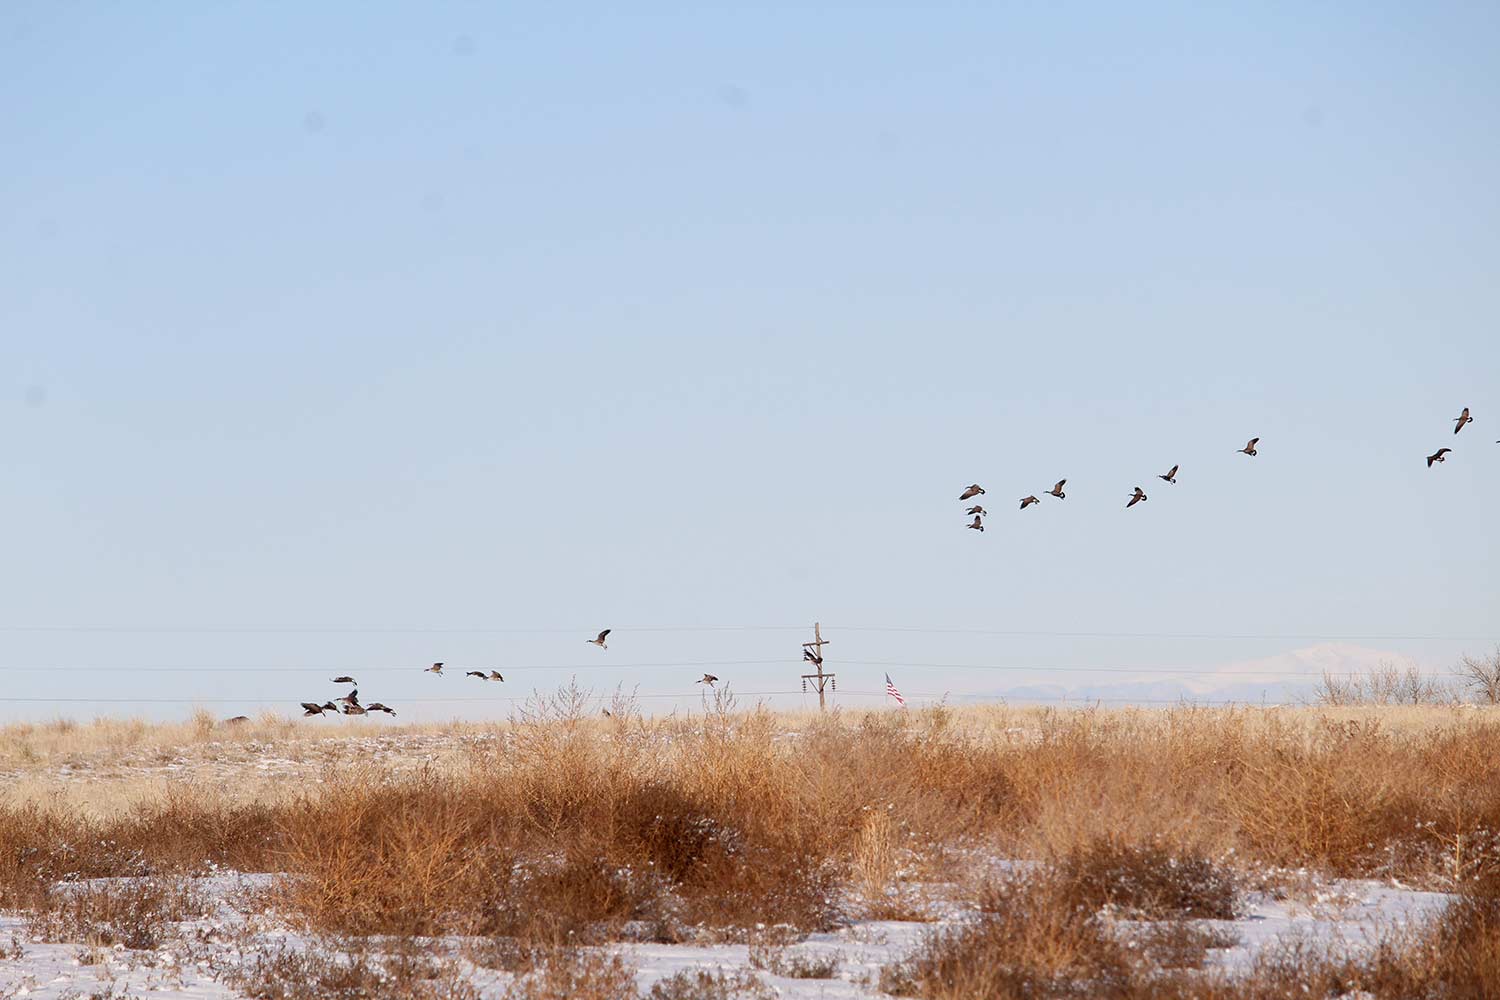 geese taking a flight in a field.